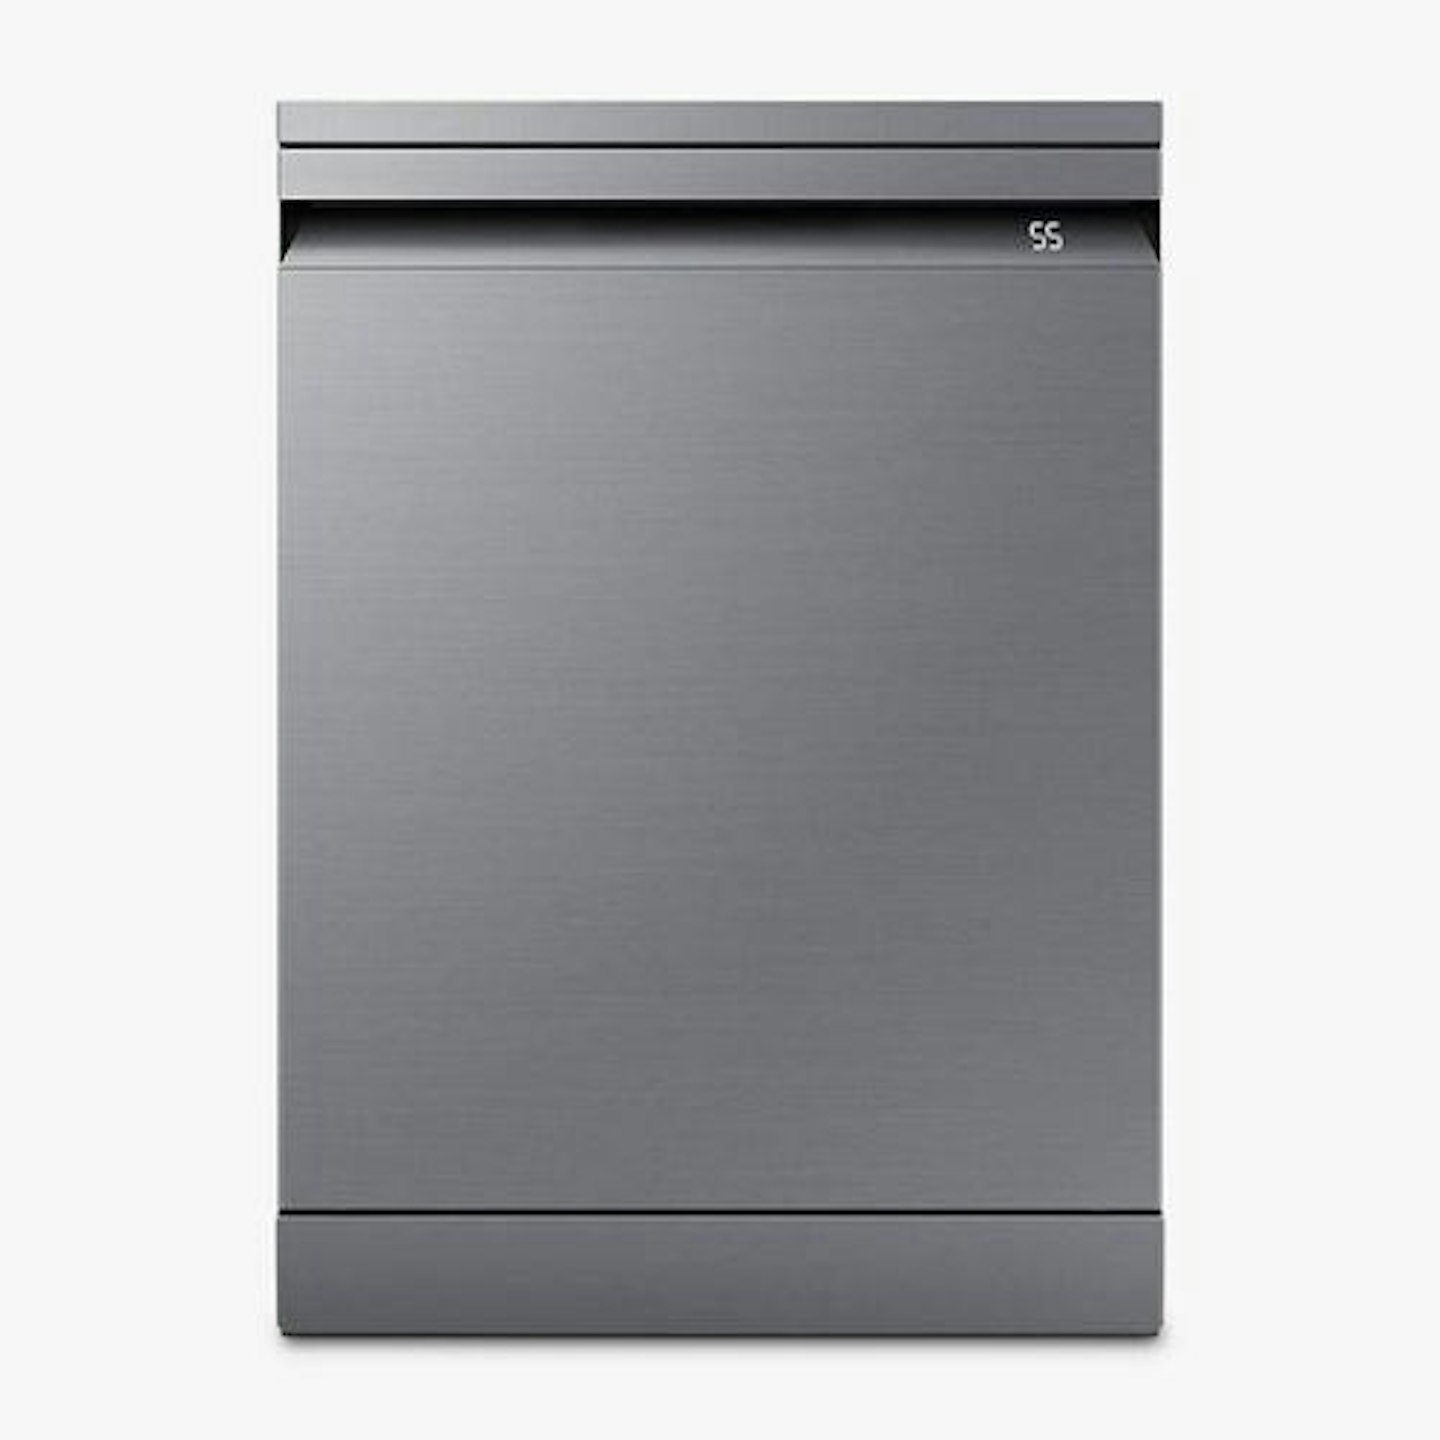 Samsung Series 11 DW60BG730FSL Freestanding Dishwasher